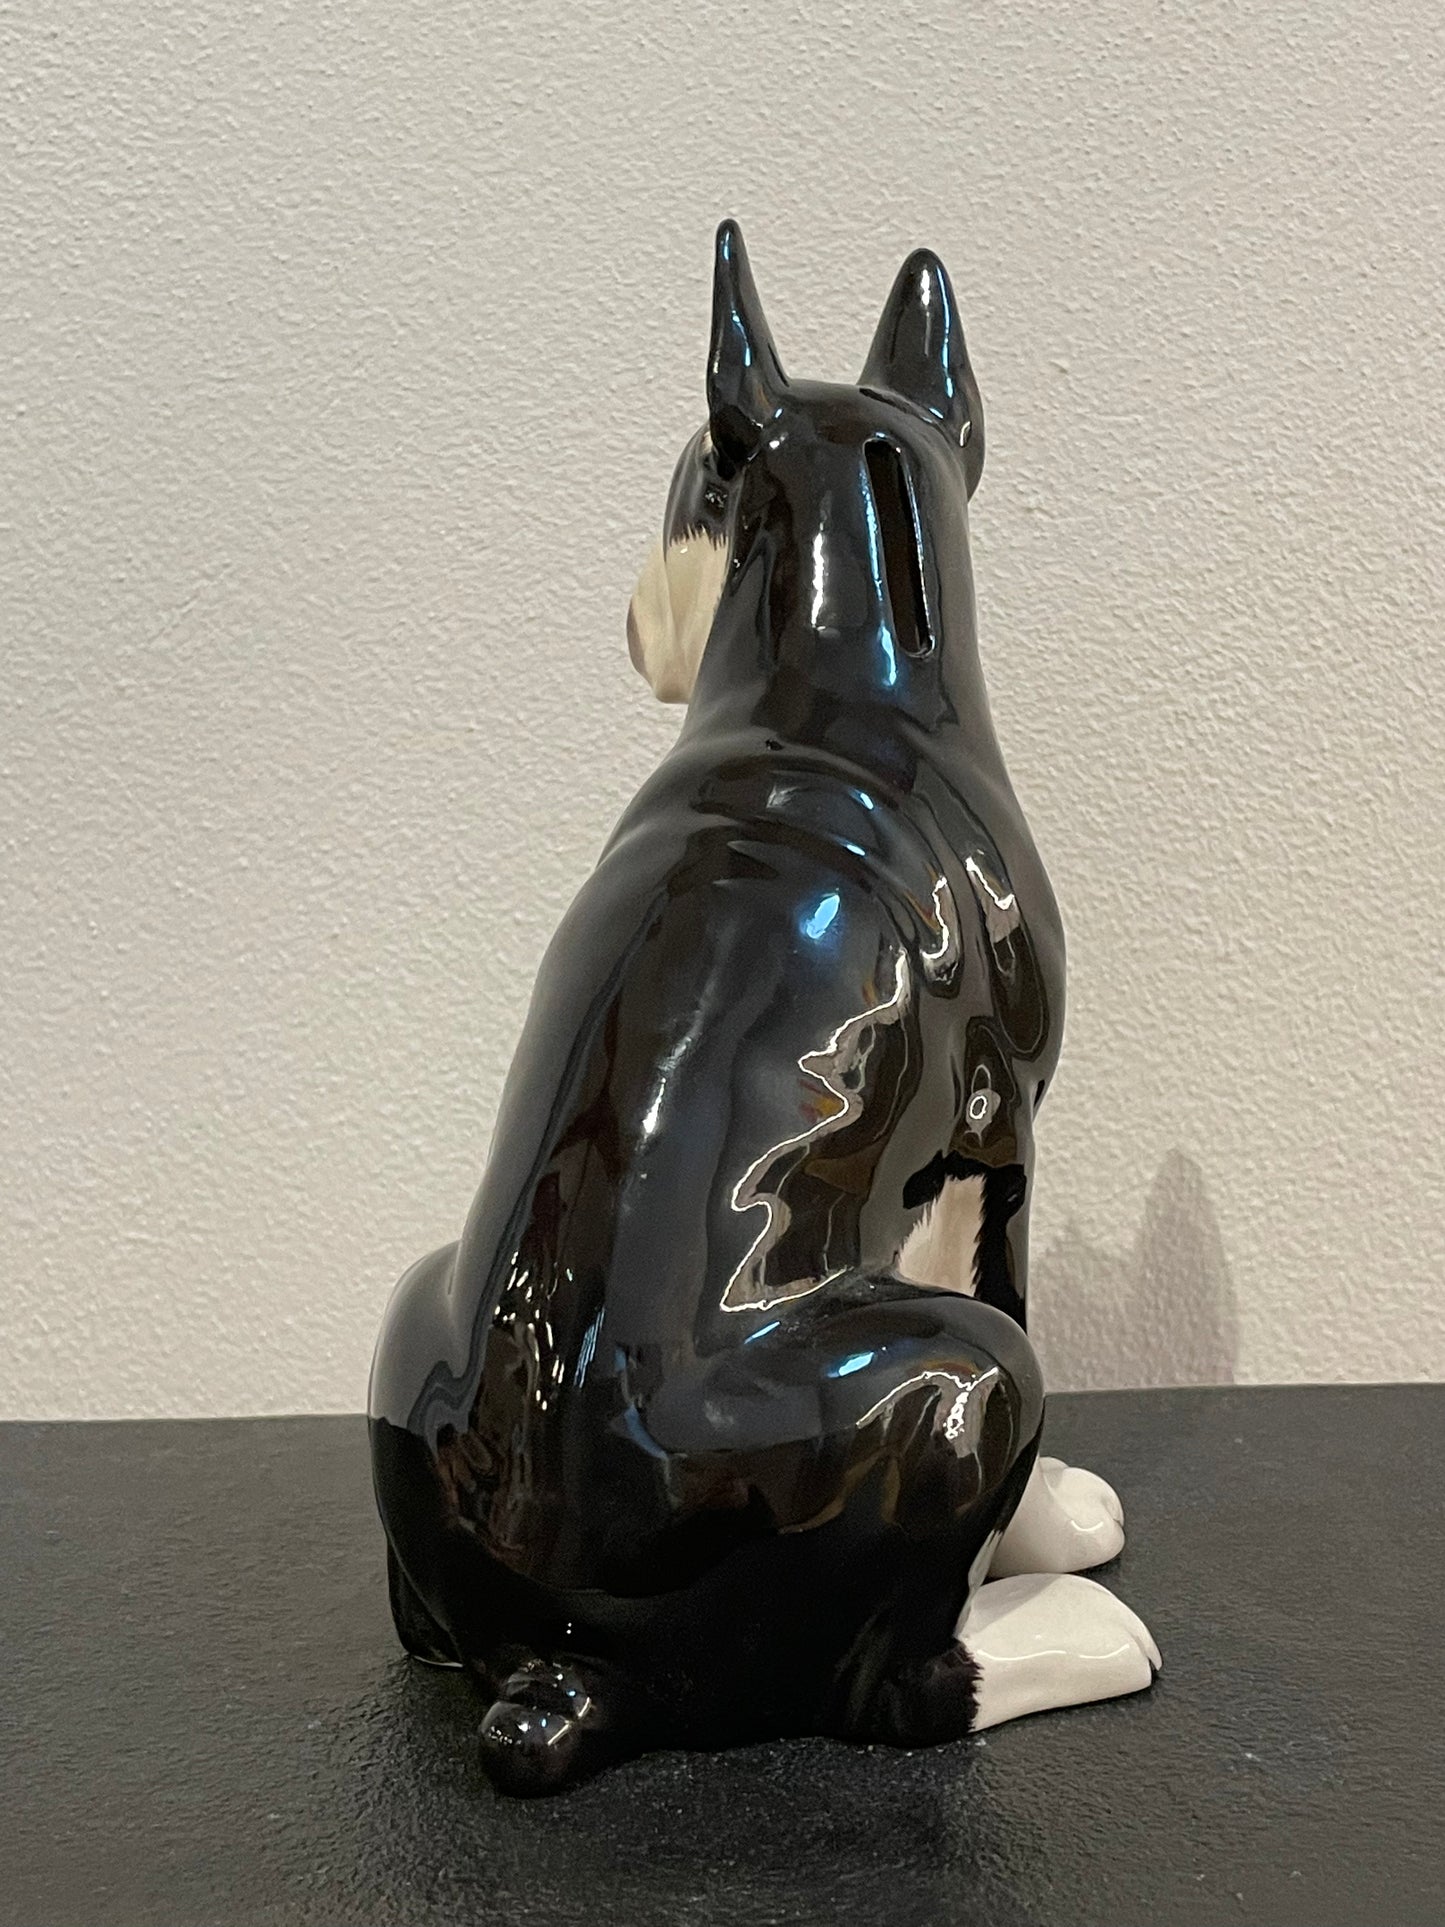 Ceramic 'Boxer' Dog Sculpture